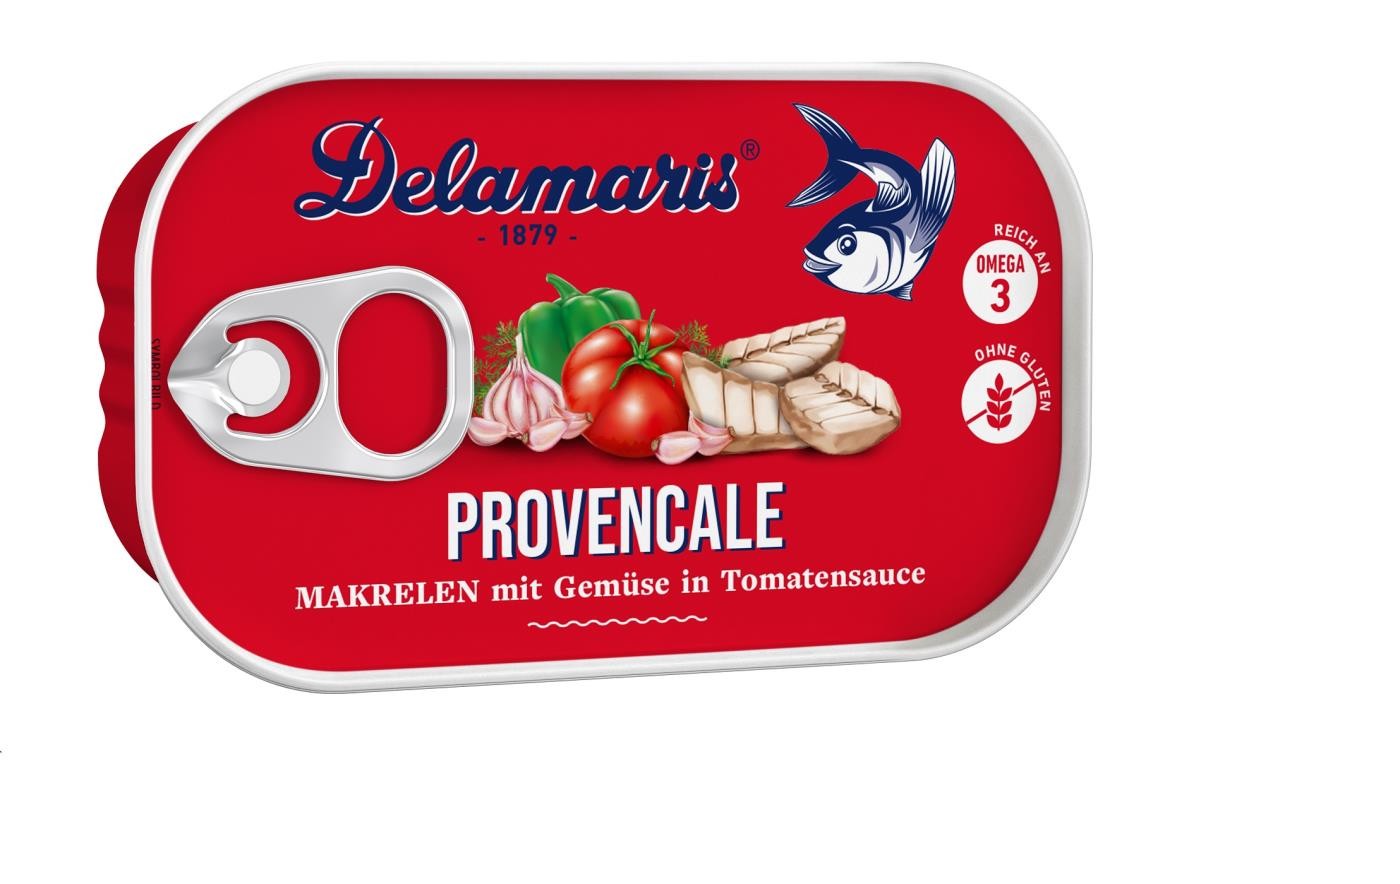 Delamaris Makrelensalat aus Makrele mit Gemüse in Tomatensauce Provencial 125g